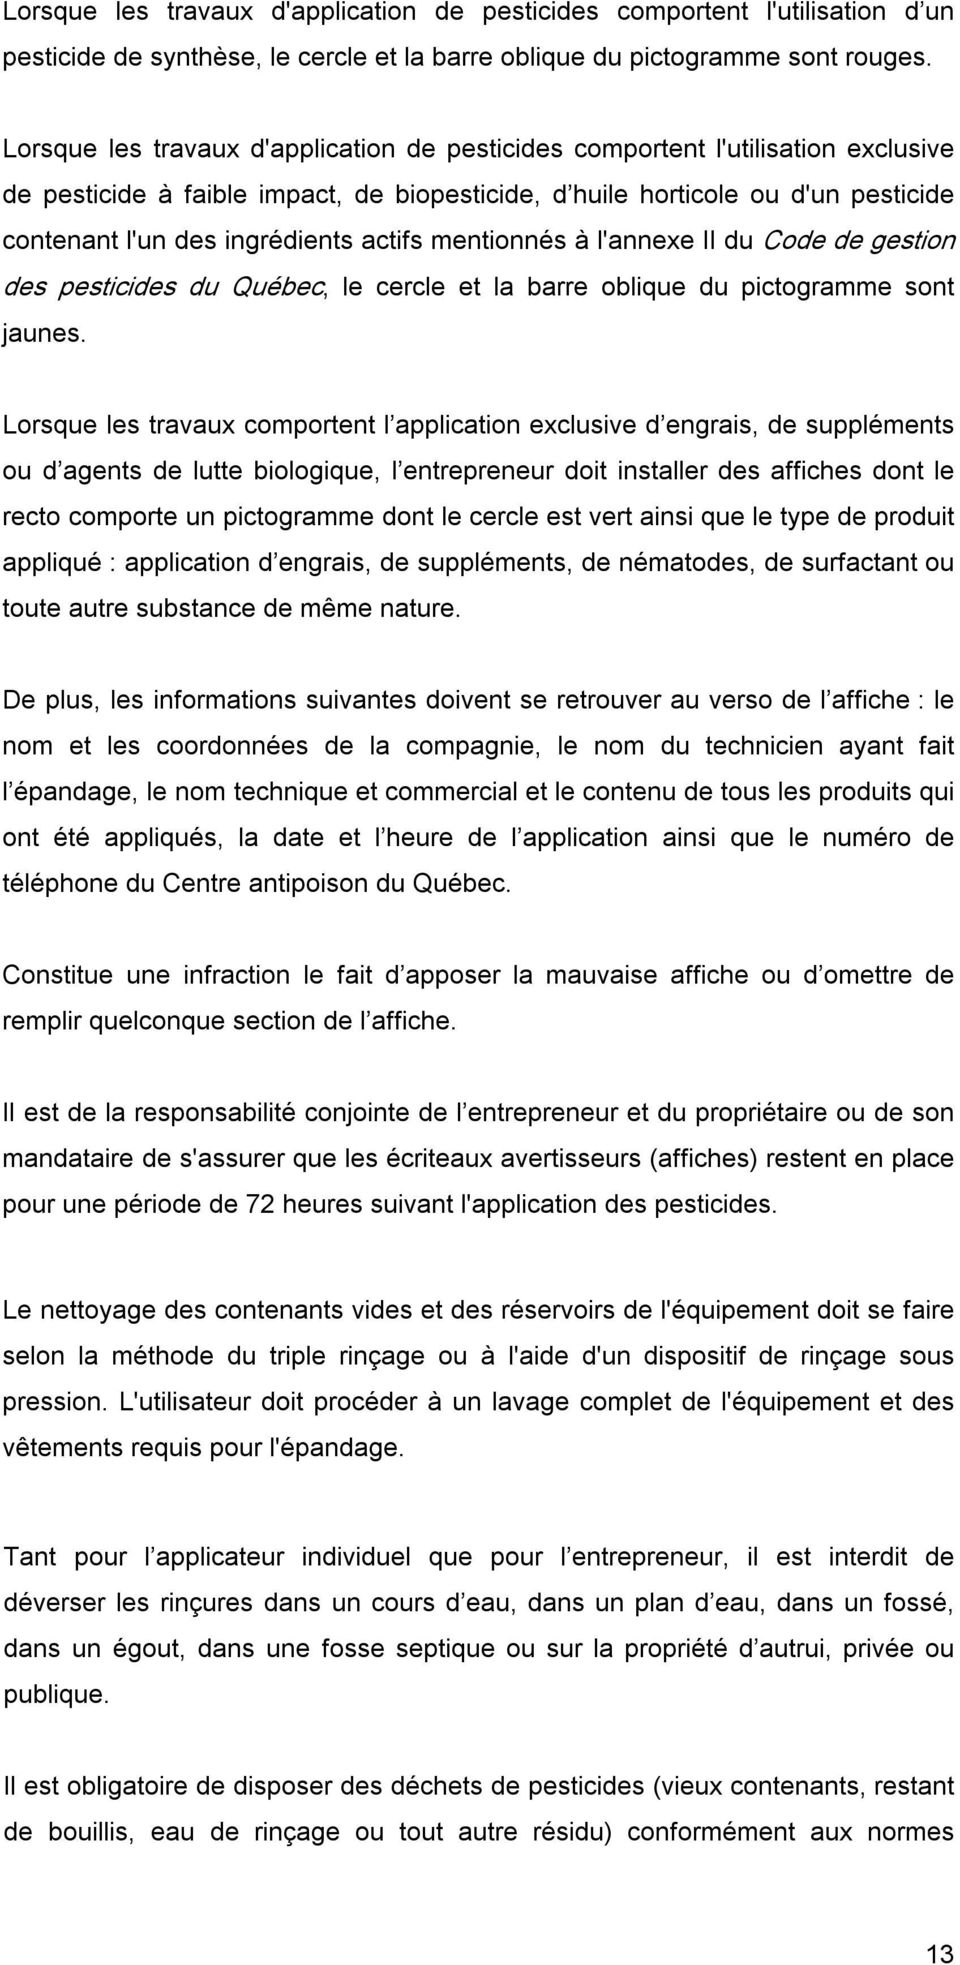 actifs mentionnés à l'annexe II du Code de gestion des pesticides du Québec, le cercle et la barre oblique du pictogramme sont jaunes.